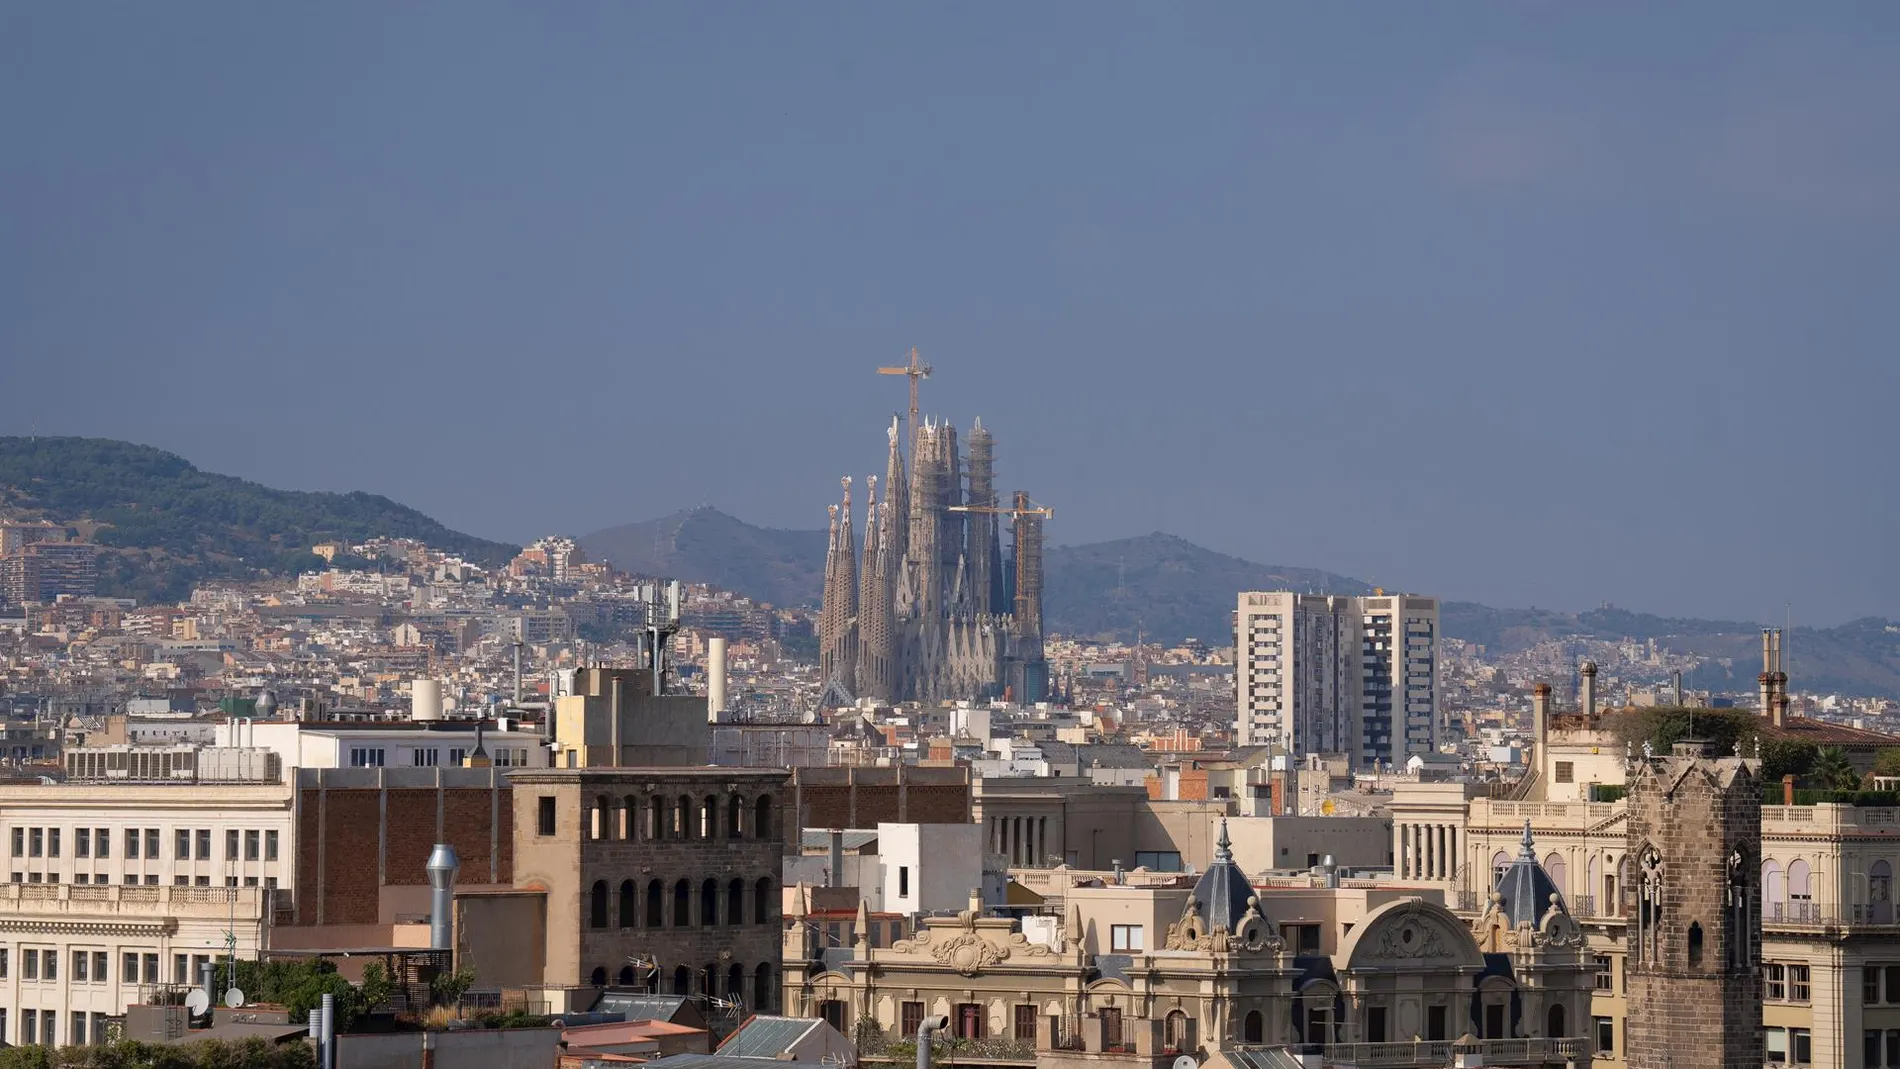 CATALUNYA.-La Sagrada Familia de Barcelona instalará una pieza de arte digital creada con IA para Sant Jordi